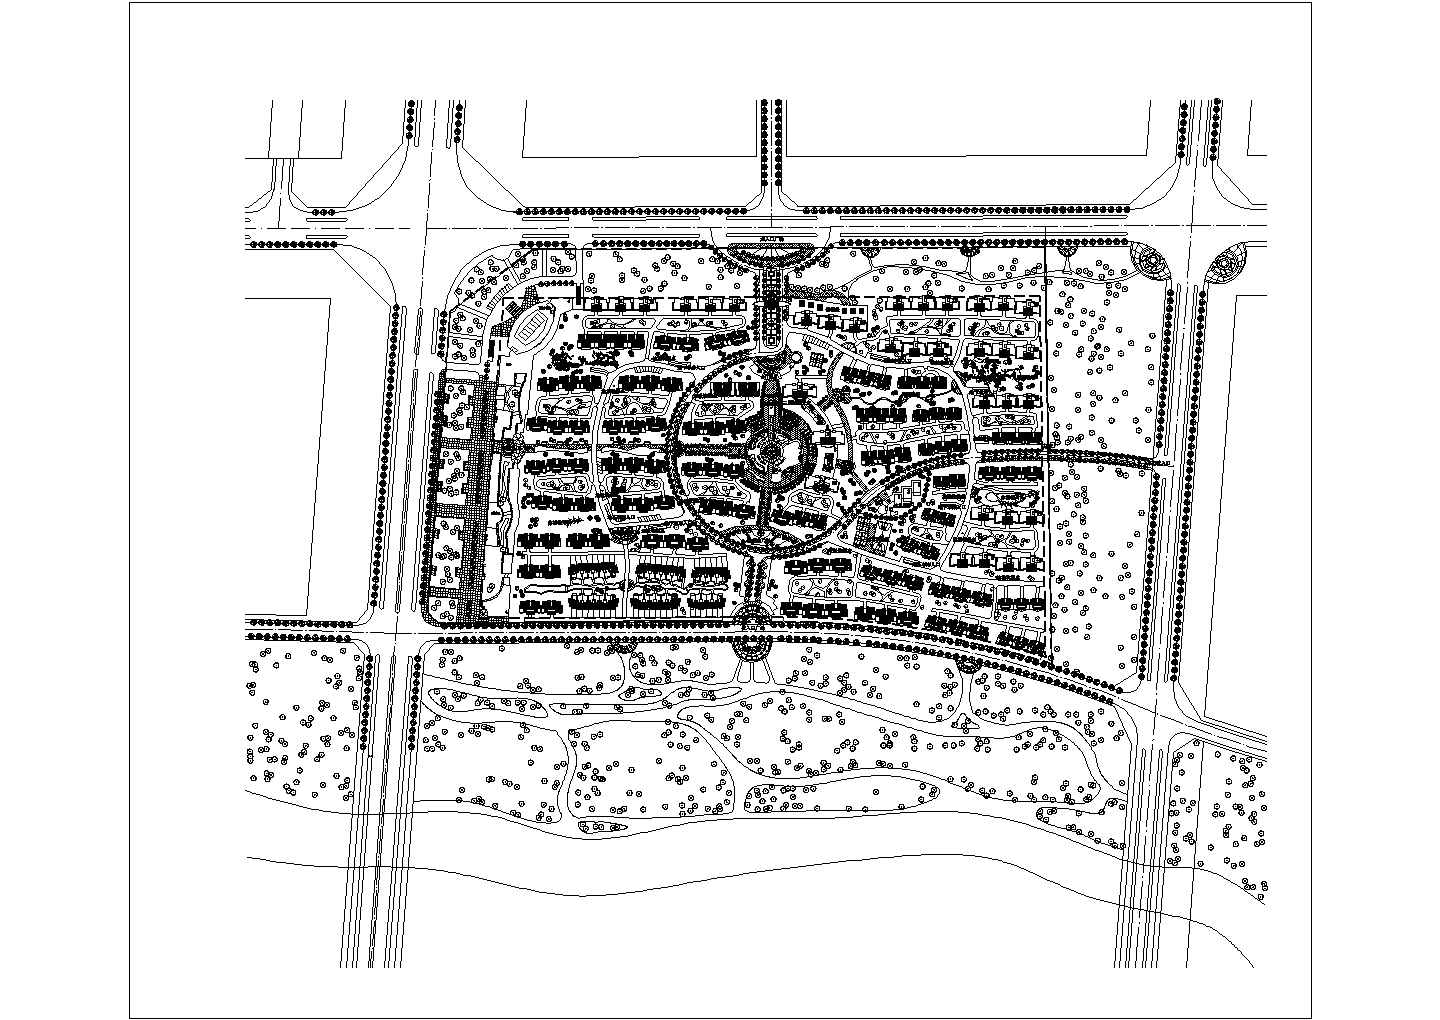 高档住宅小区规划方案图